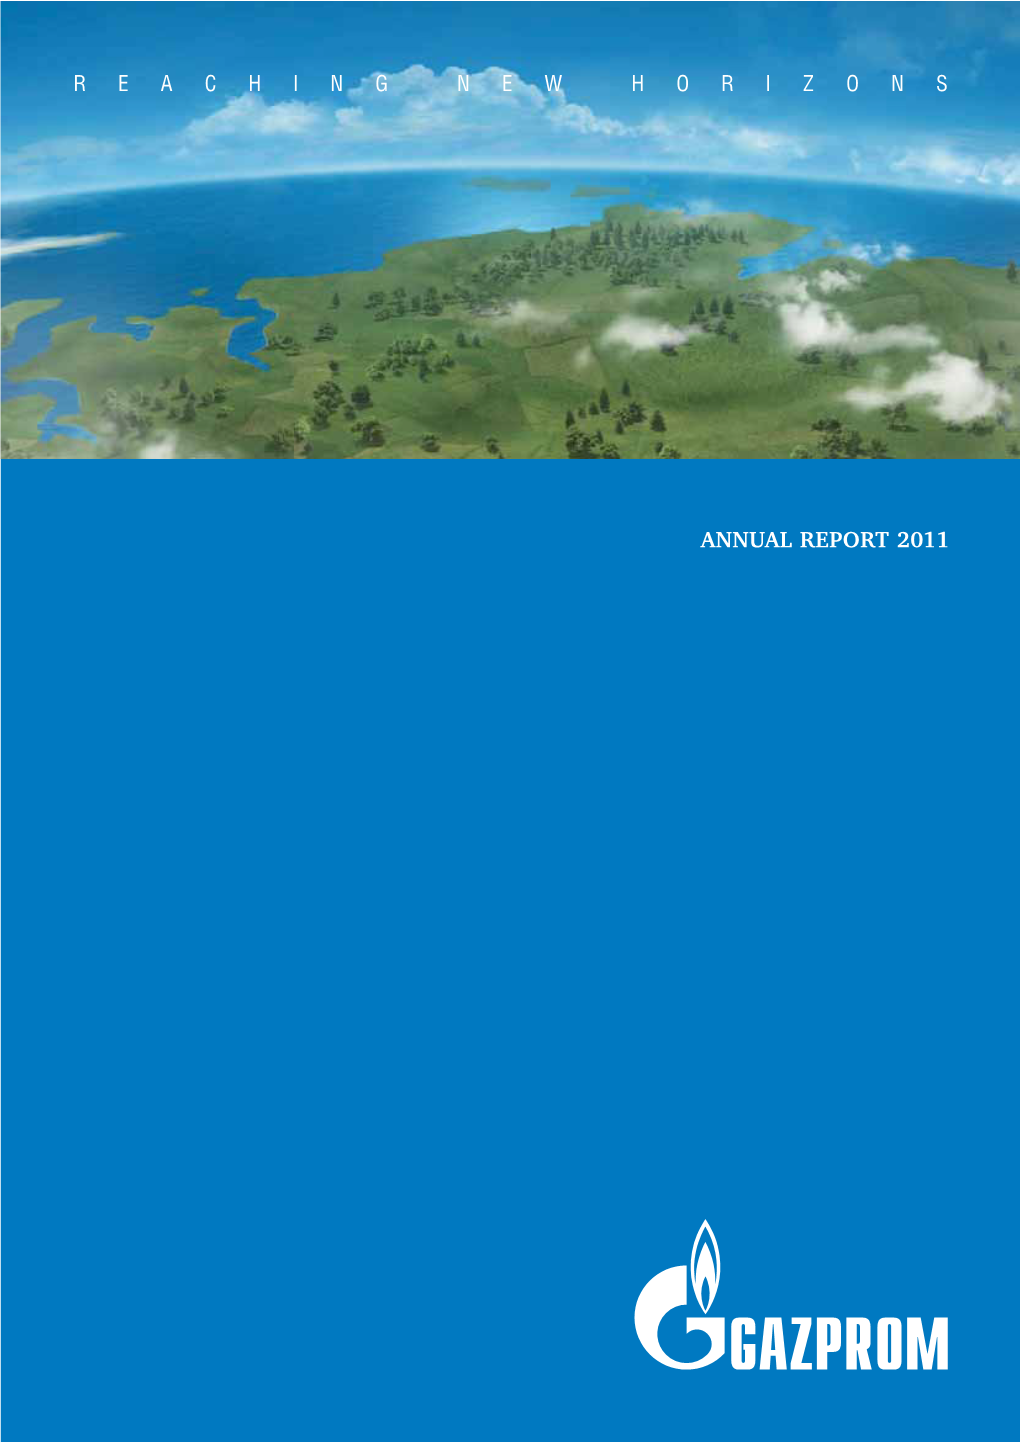 Annual Report 2011 Annual Report 2011